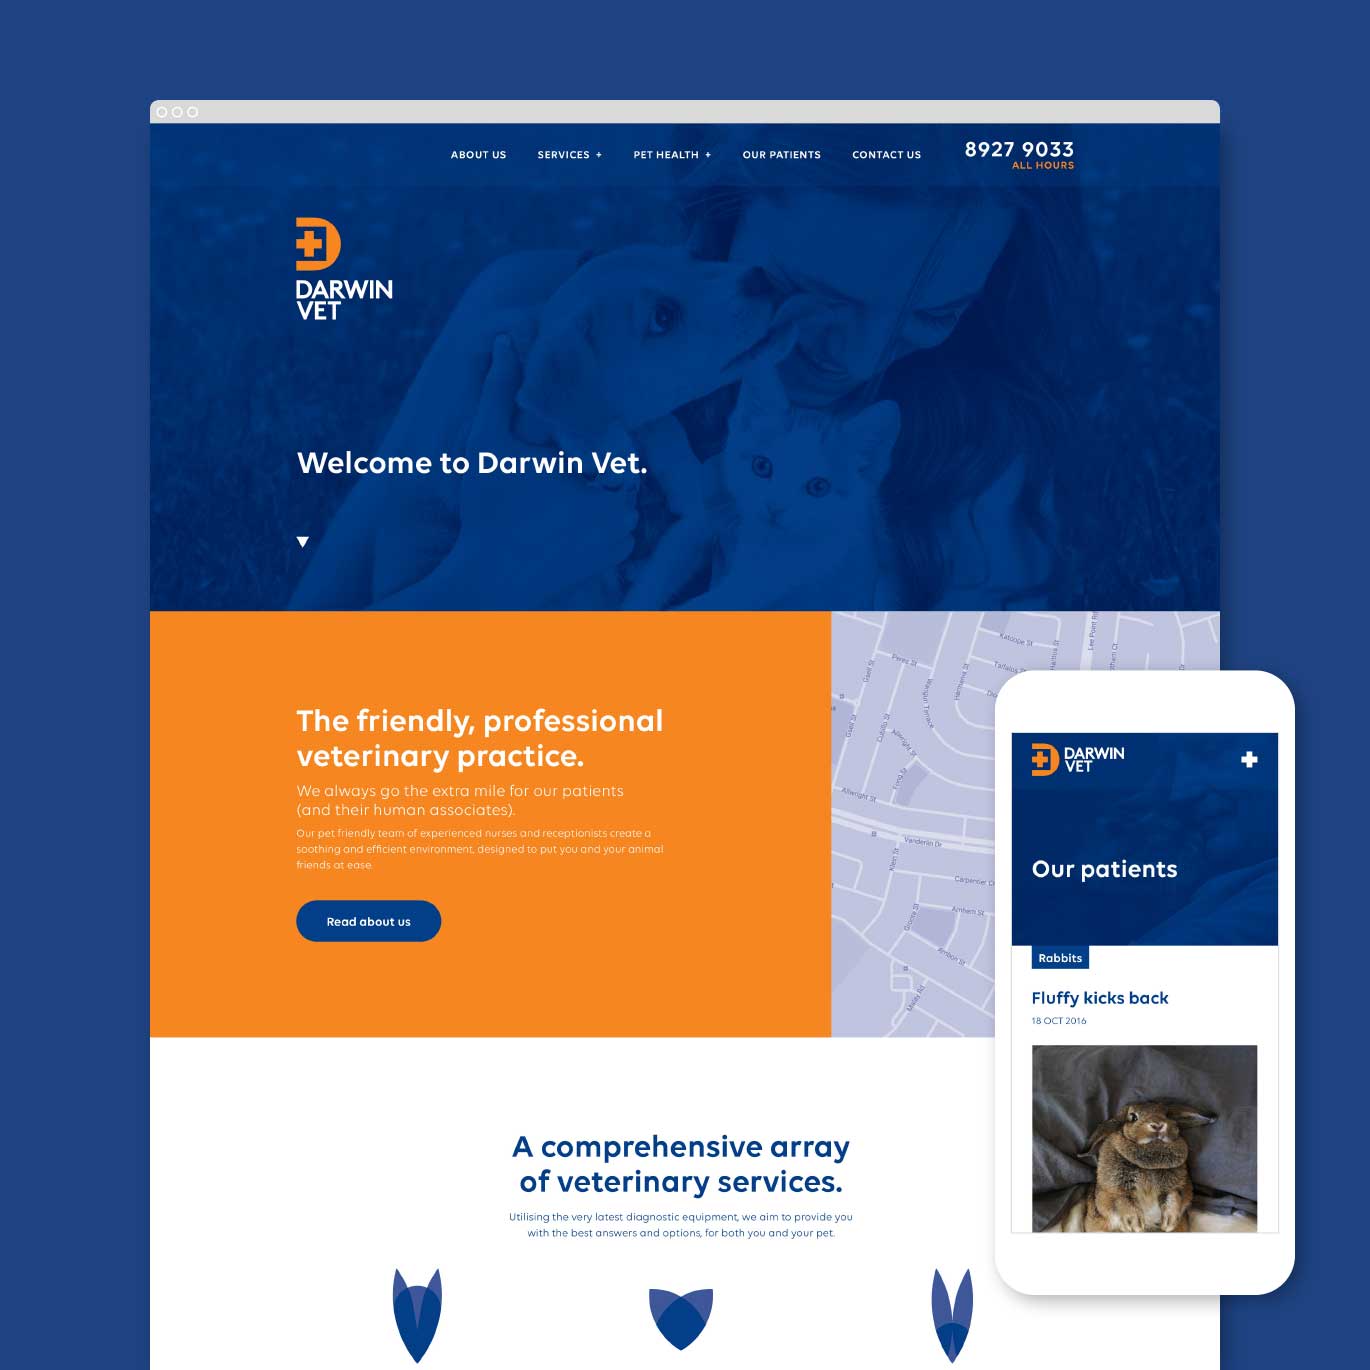 Darwin Vet Website Design and Development